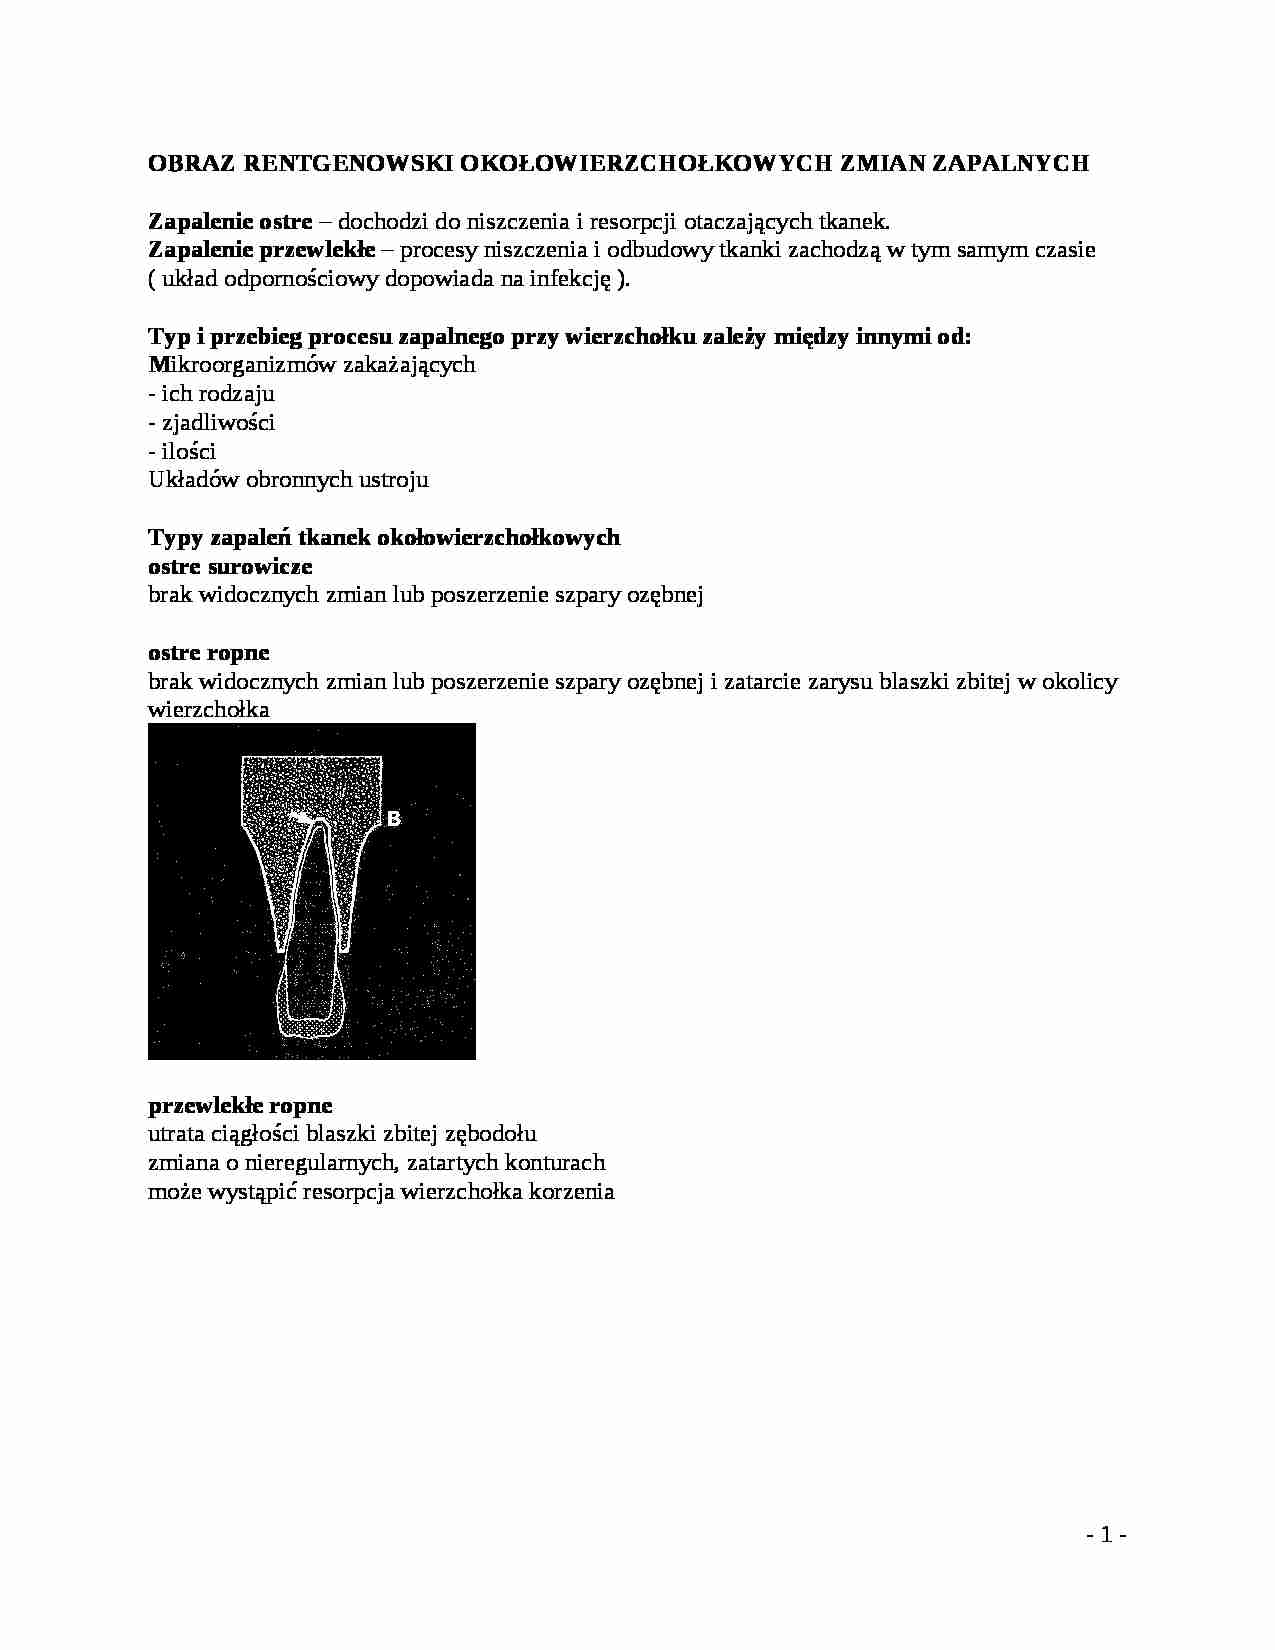 Wykład - Obraz rentgenowski okołowierzchołkowych zmian zapalnych - strona 1